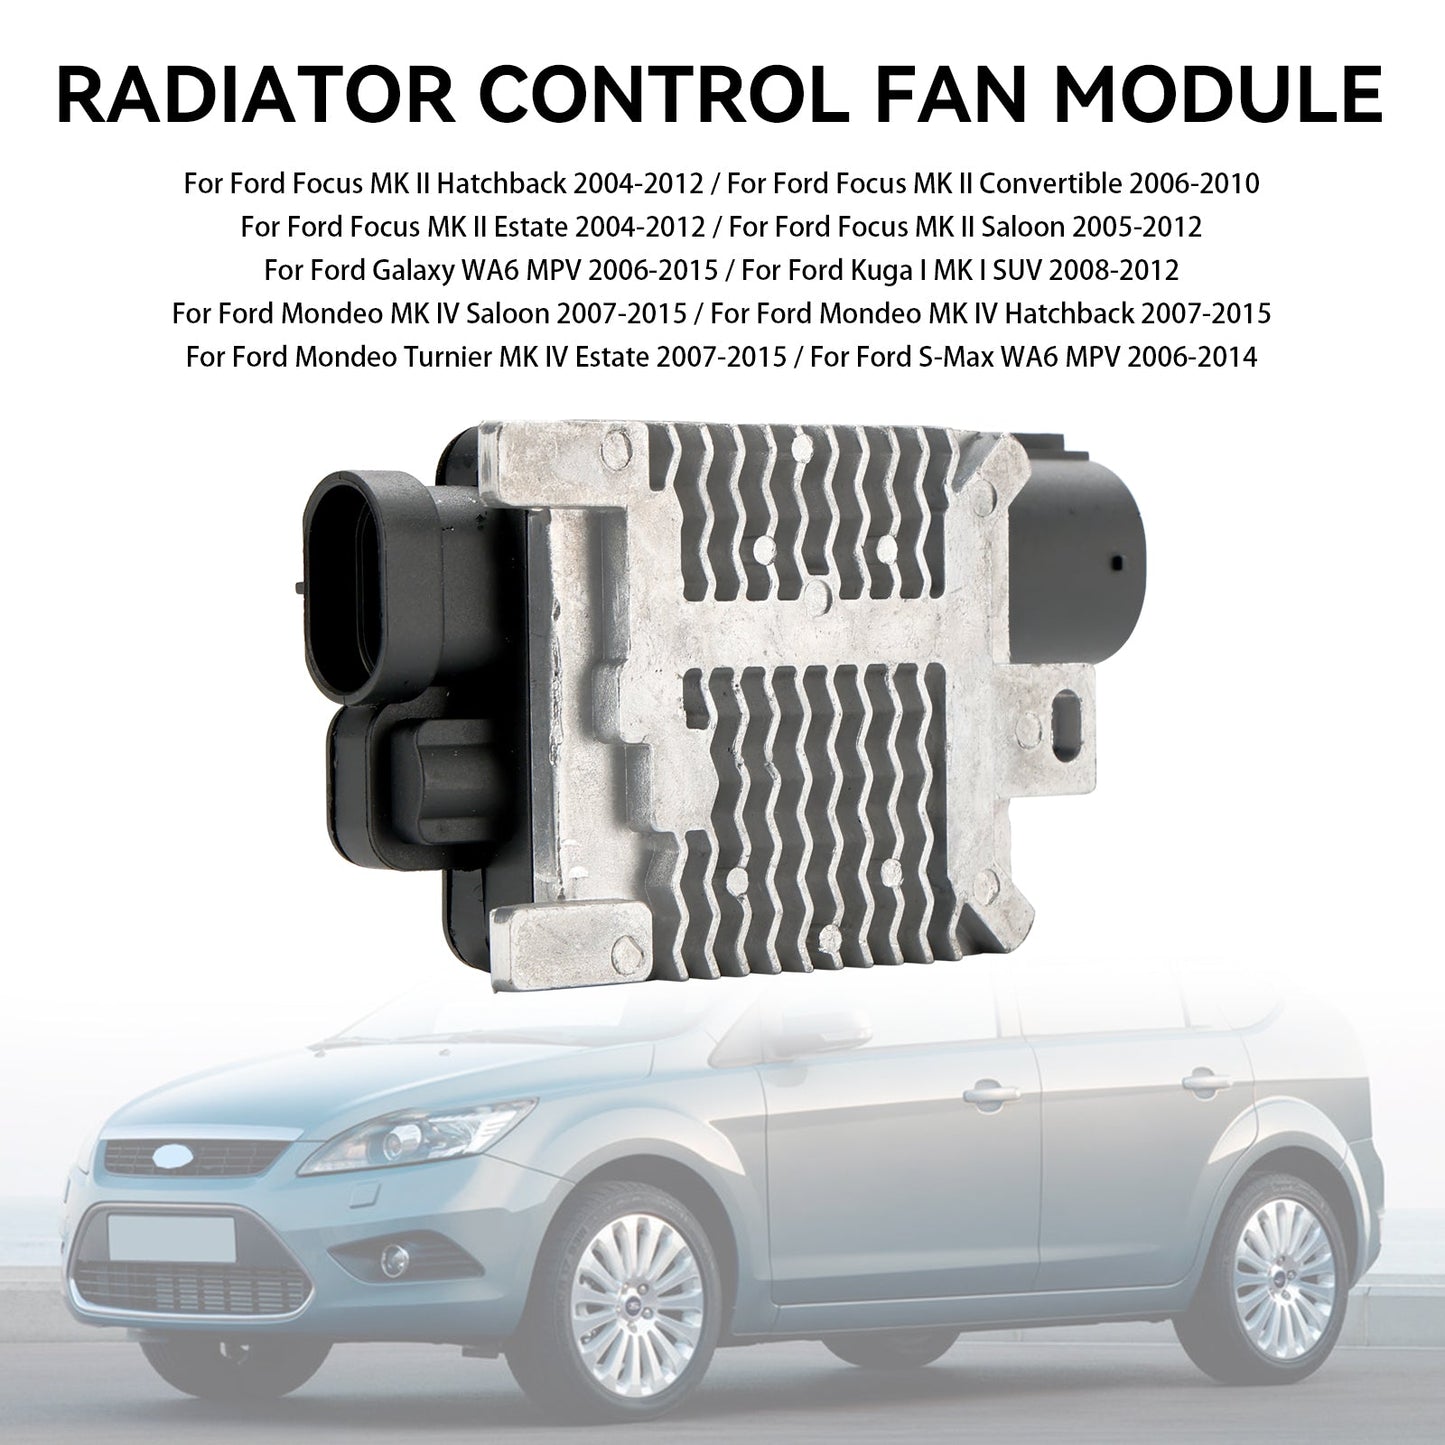 Radiator Control Fan Module 1477218 Fit Ford Focus MK II/IV 6W1Z8B658AC